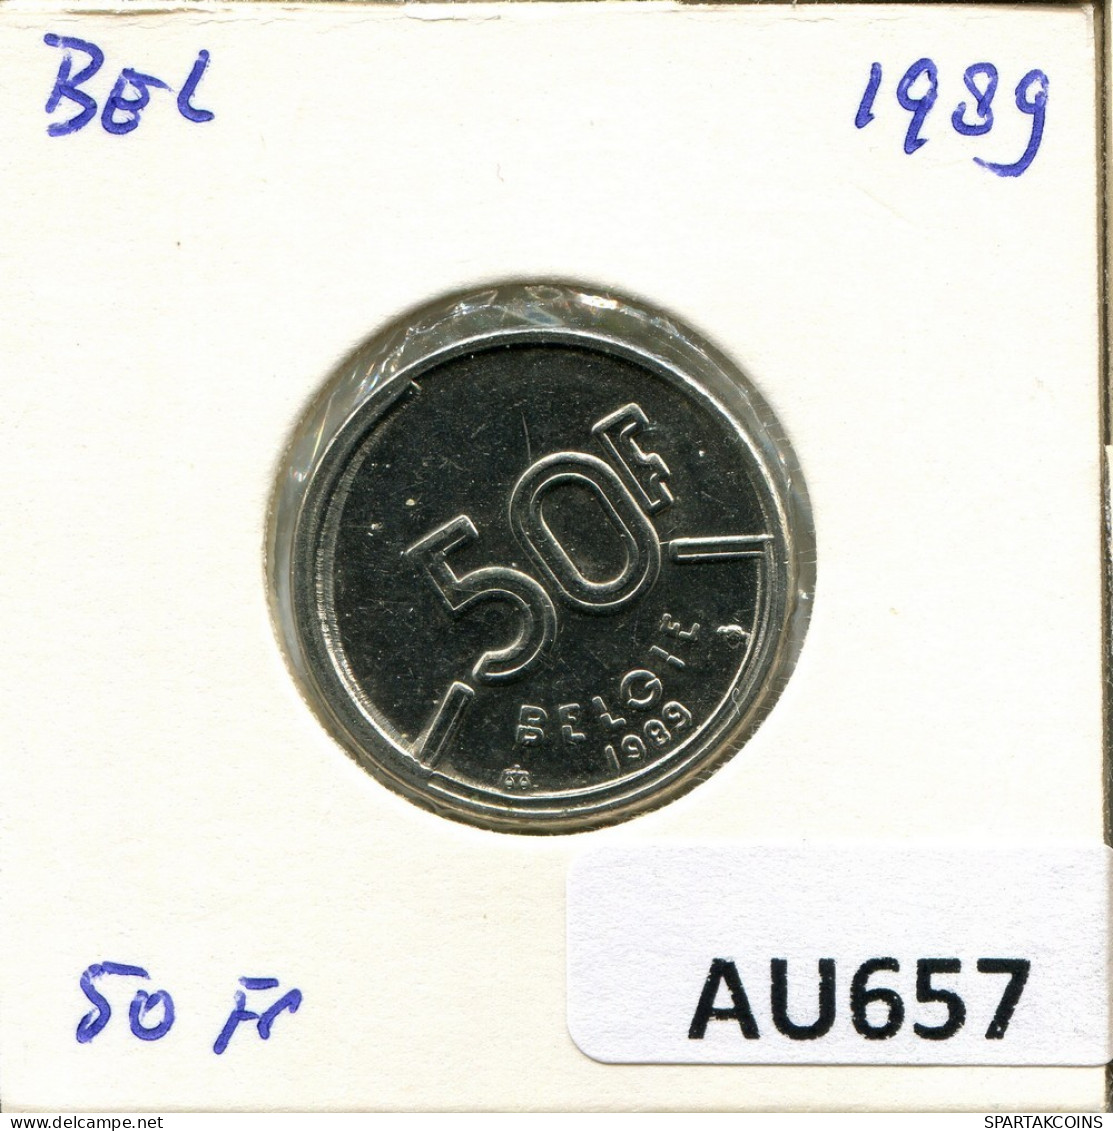 50 FRANCS 1989 DUTCH Text BELGIUM Coin #AU657.U.A - 50 Francs